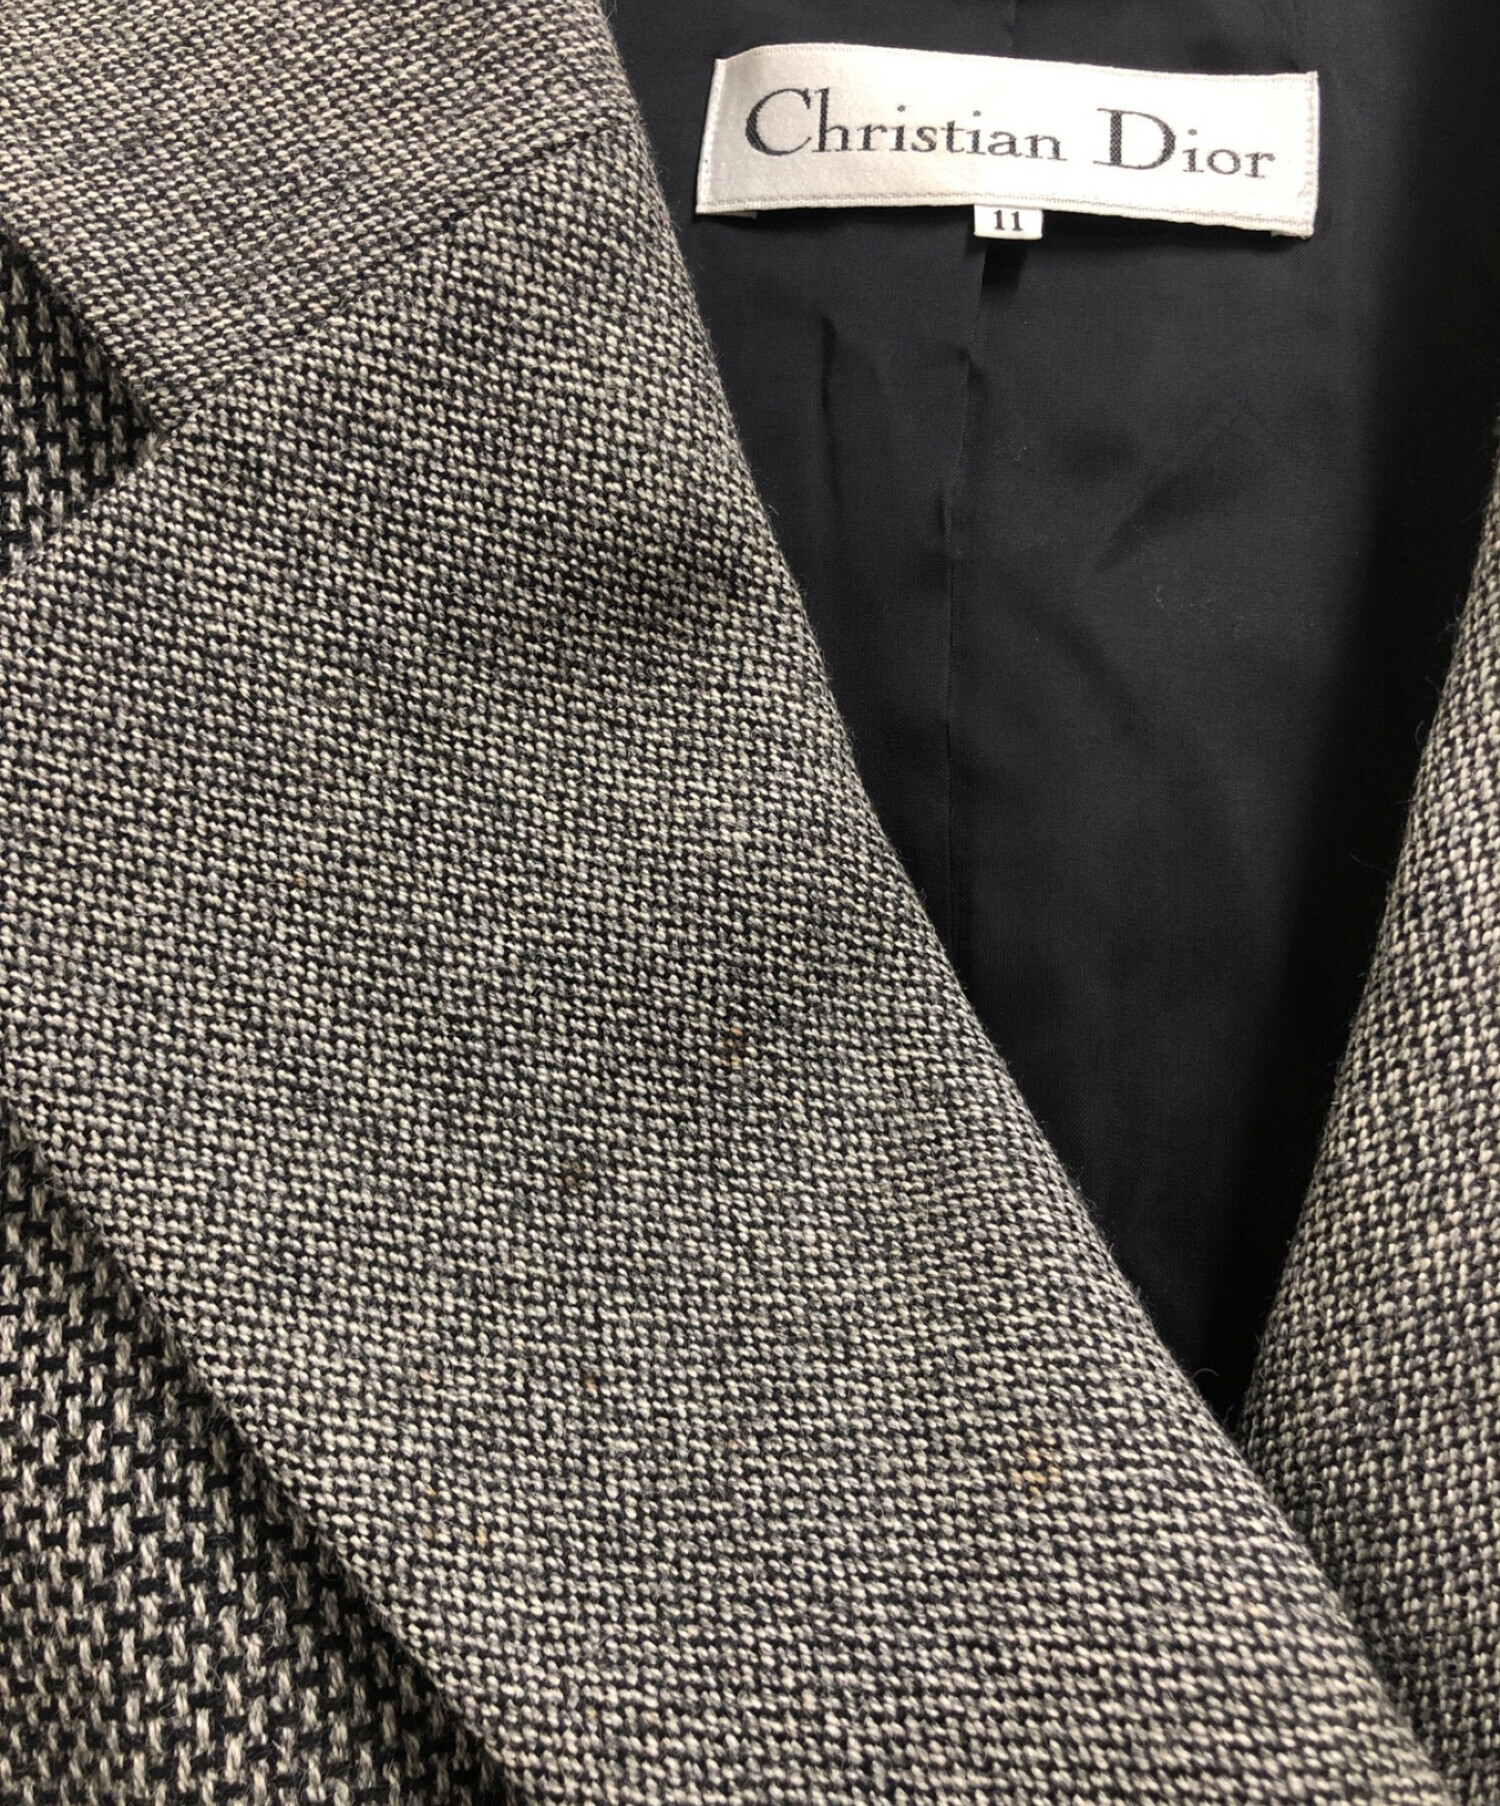 Christian Dior (クリスチャン ディオール) ダブルジャケット グレー サイズ:11